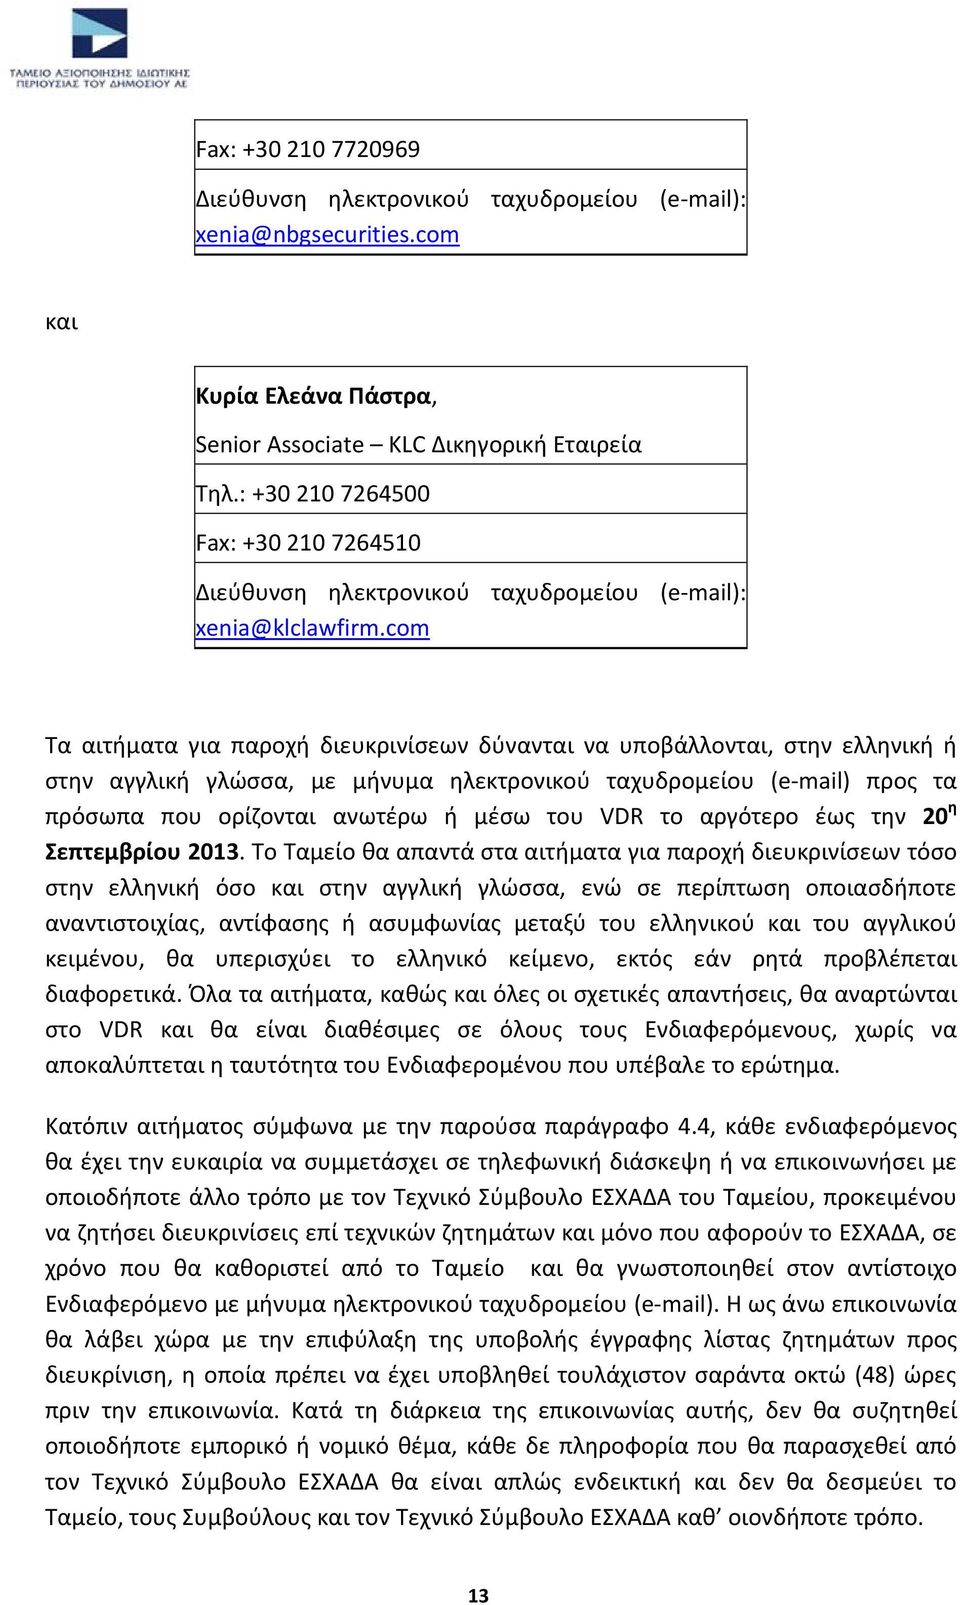 com Τα αιτήματα για παροχή διευκρινίσεων δύνανται να υποβάλλονται, στην ελληνική ή στην αγγλική γλώσσα, με μήνυμα ηλεκτρονικού ταχυδρομείου (e-mail) προς τα πρόσωπα που ορίζονται ανωτέρω ή μέσω του